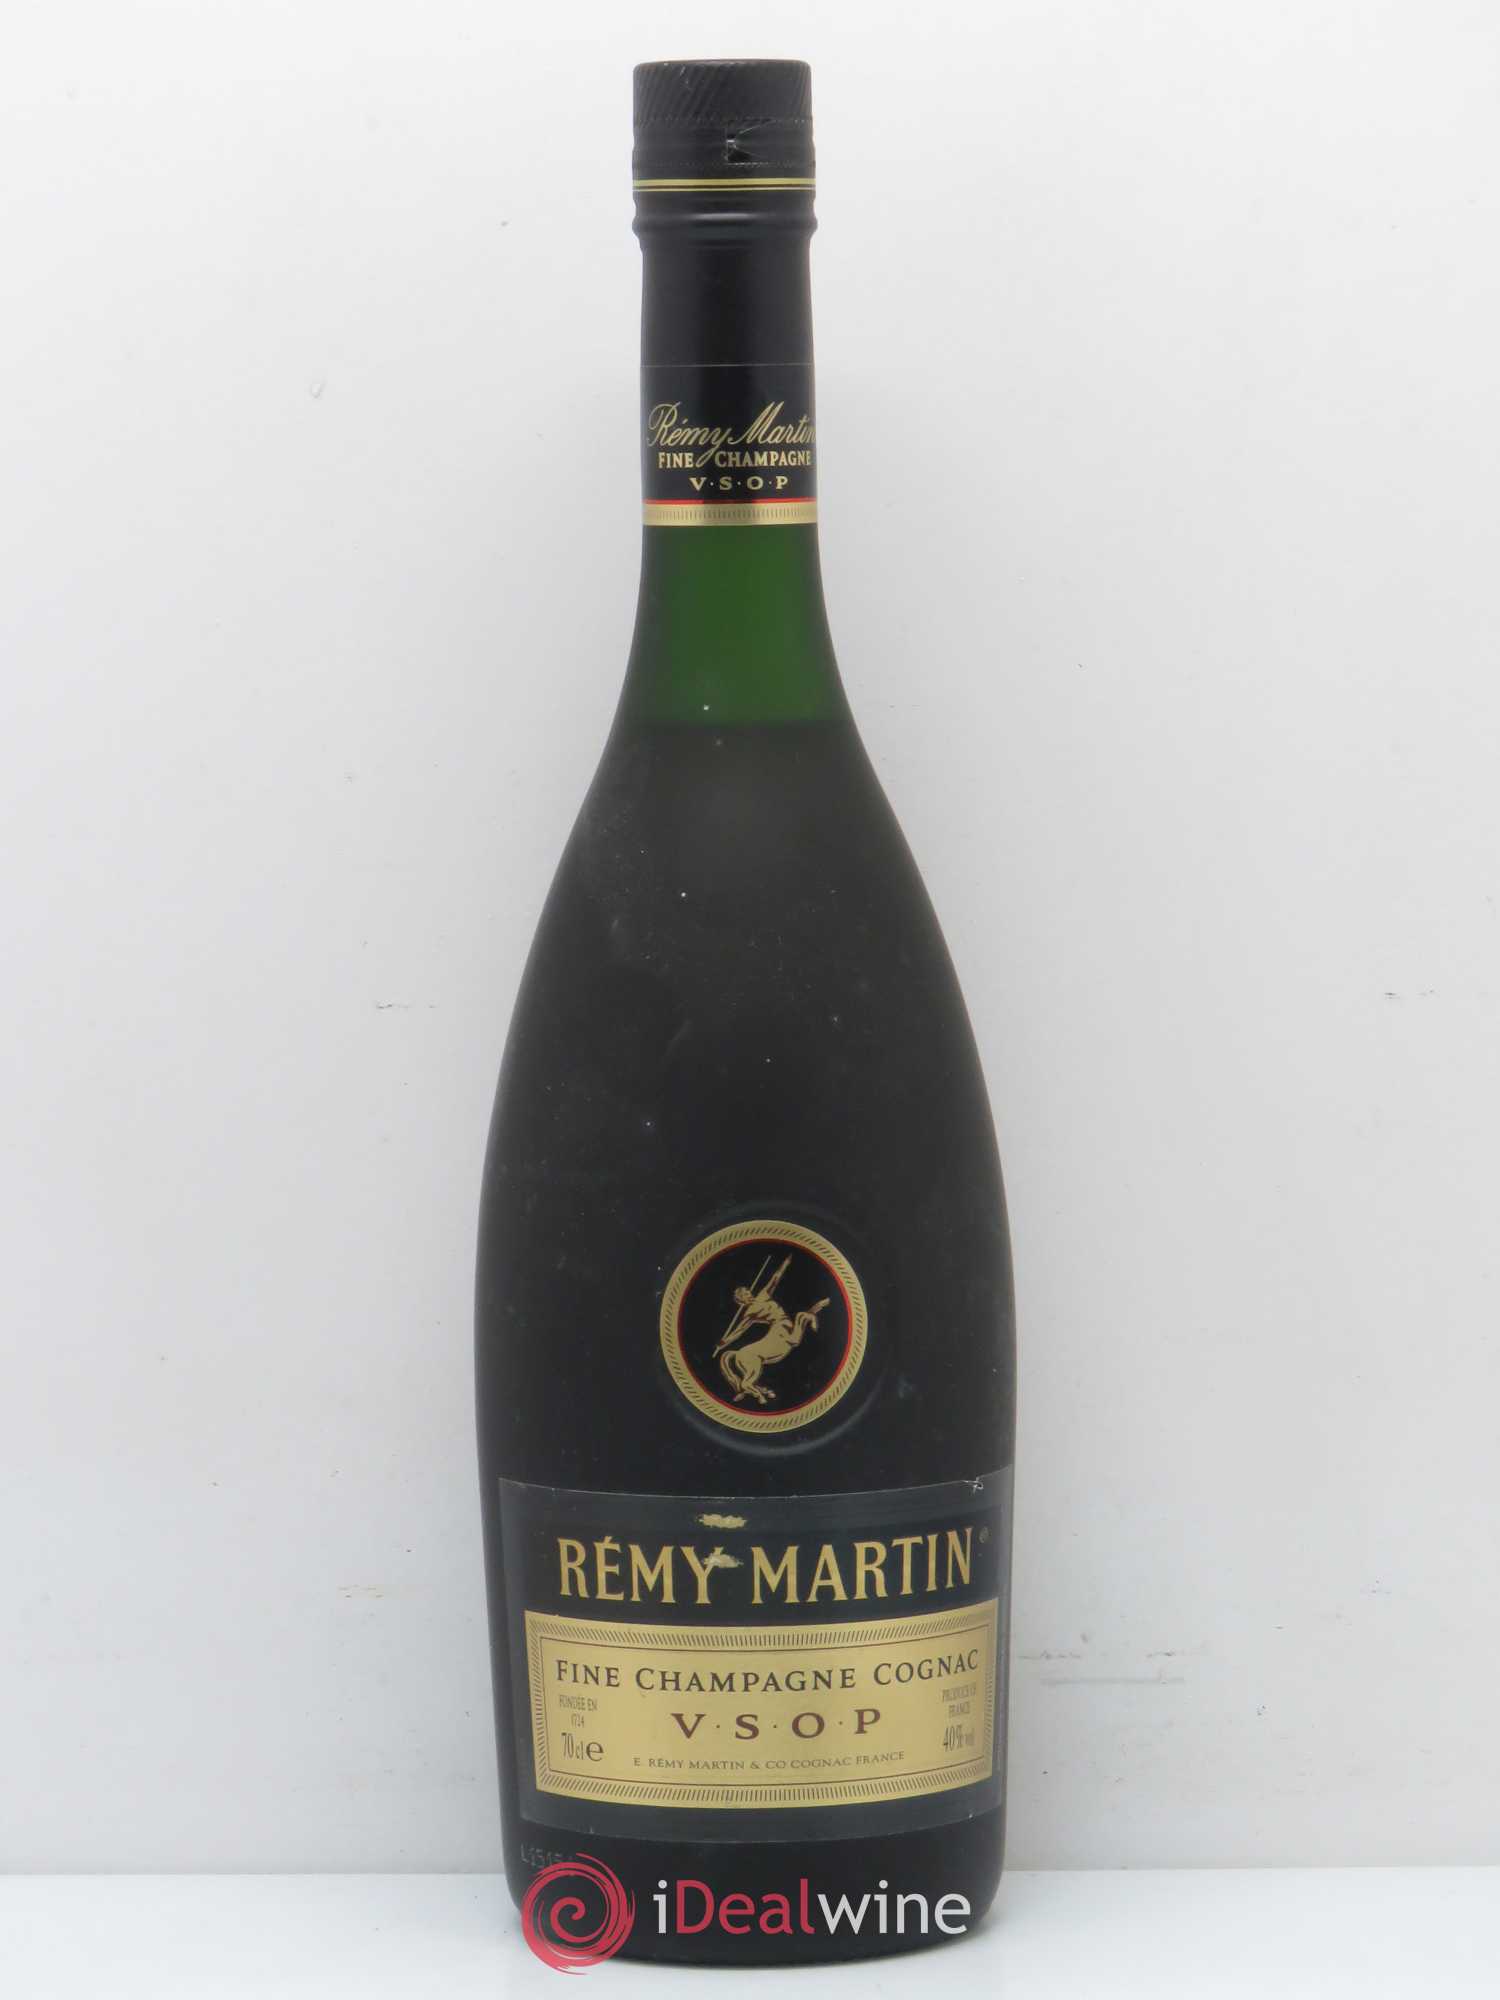 Remy Martin Champagne Cognac v.s.o.p. Remy Martin Fine Champagne Cognac.